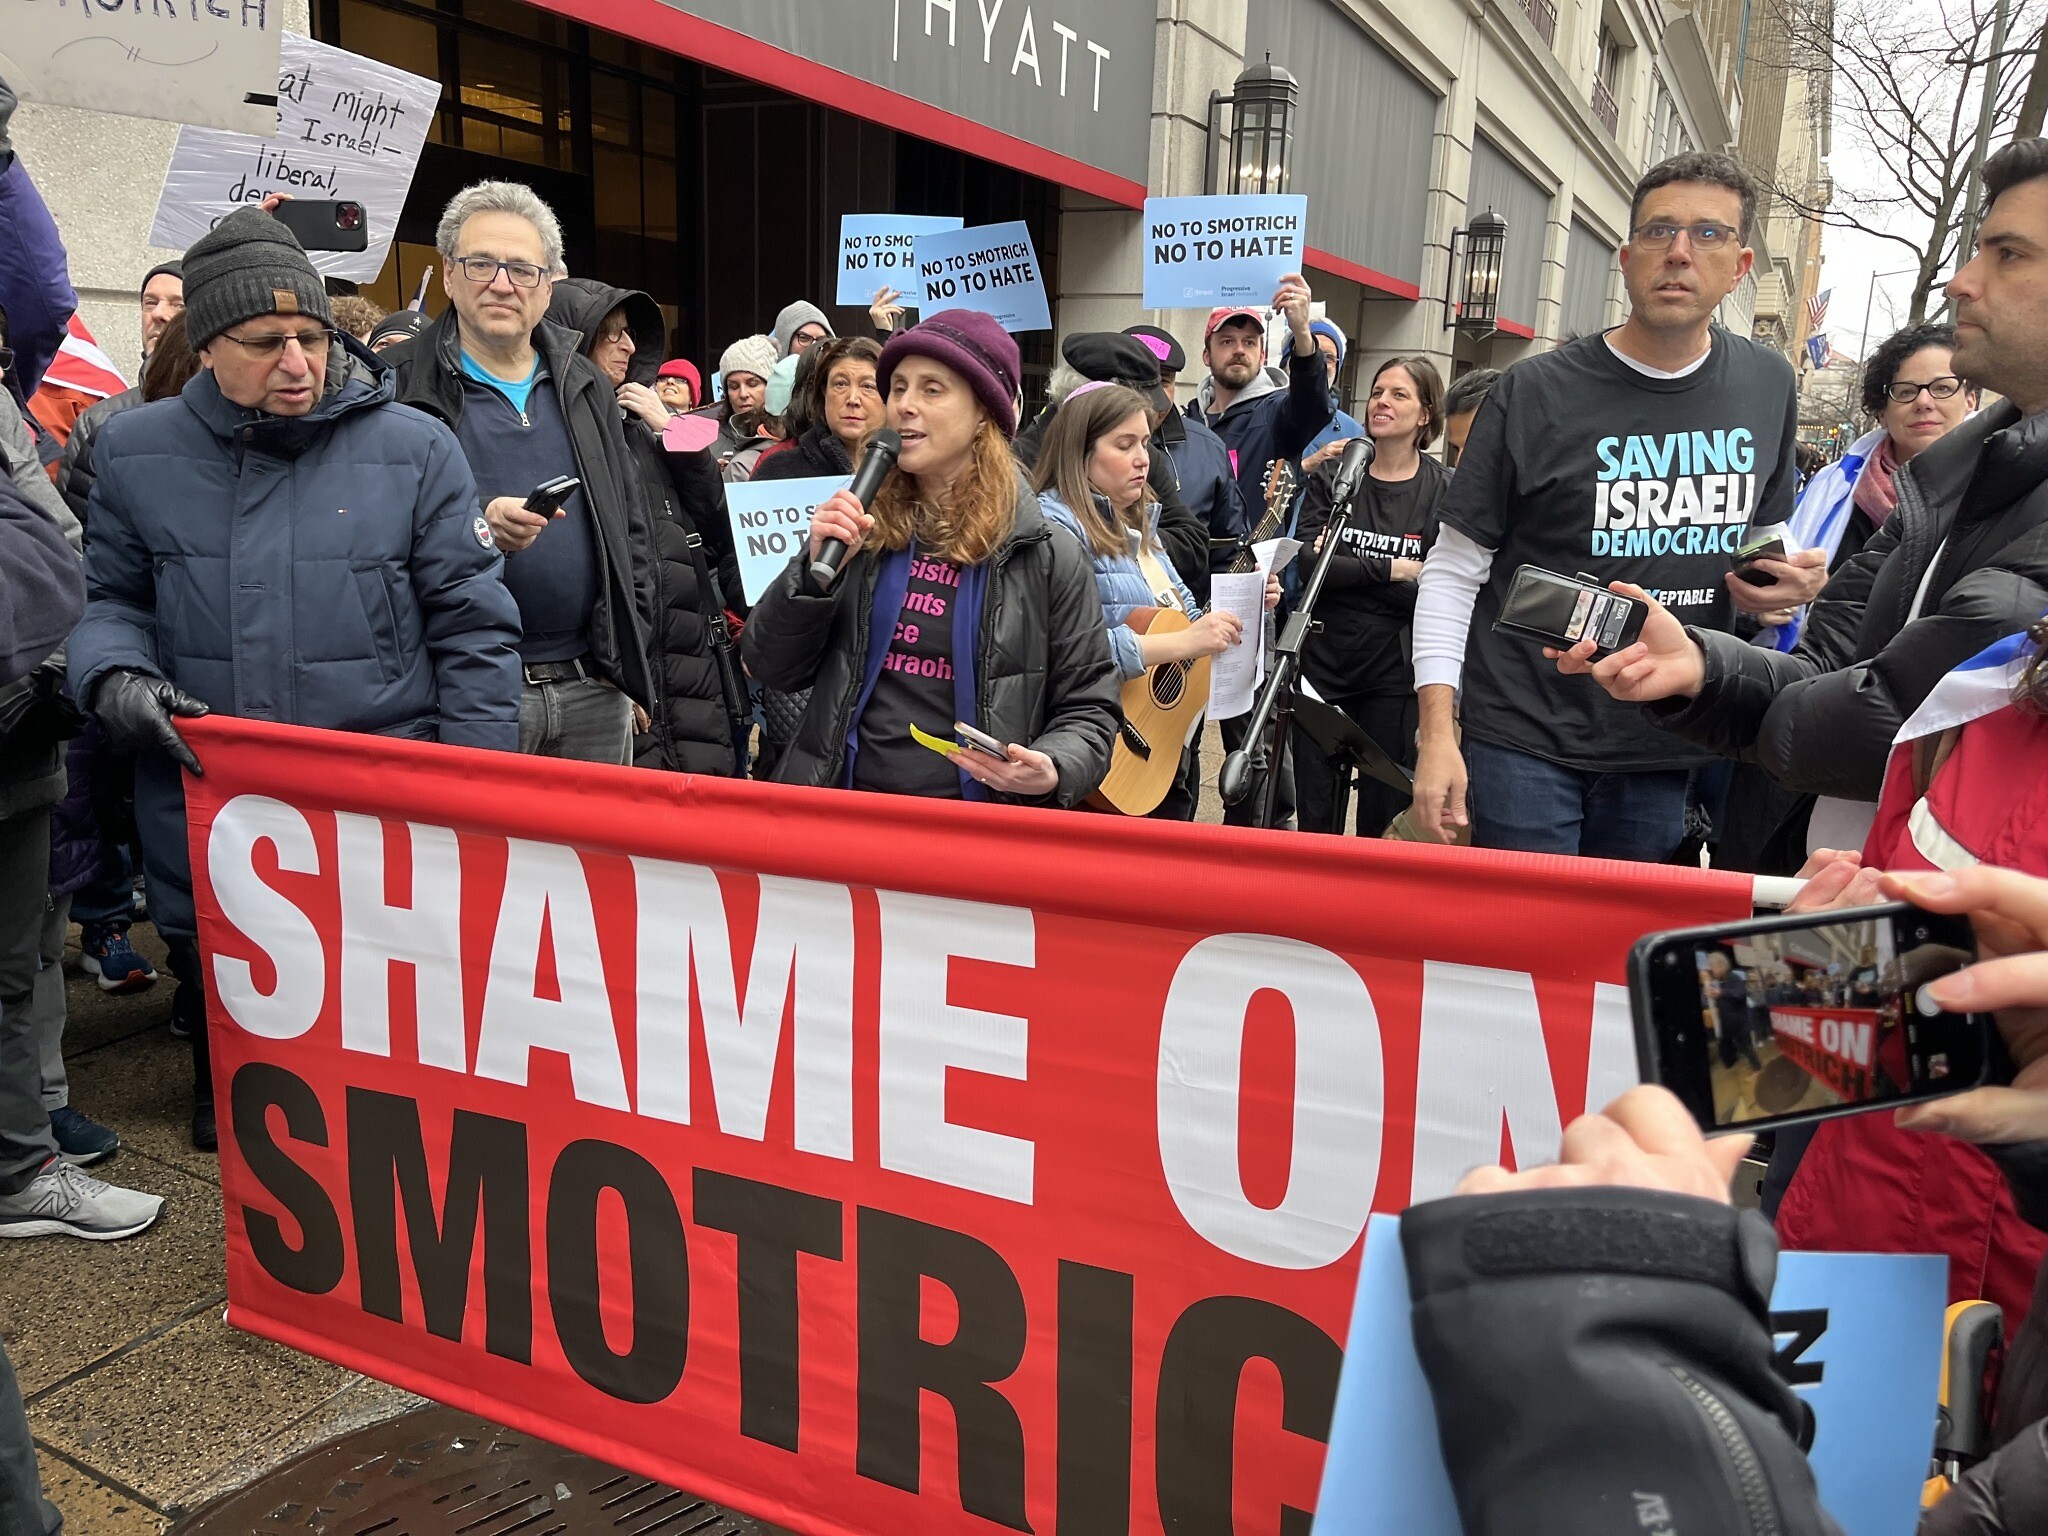 Des américaines manifestent à Washington pour protester contre la visite de Smotrich